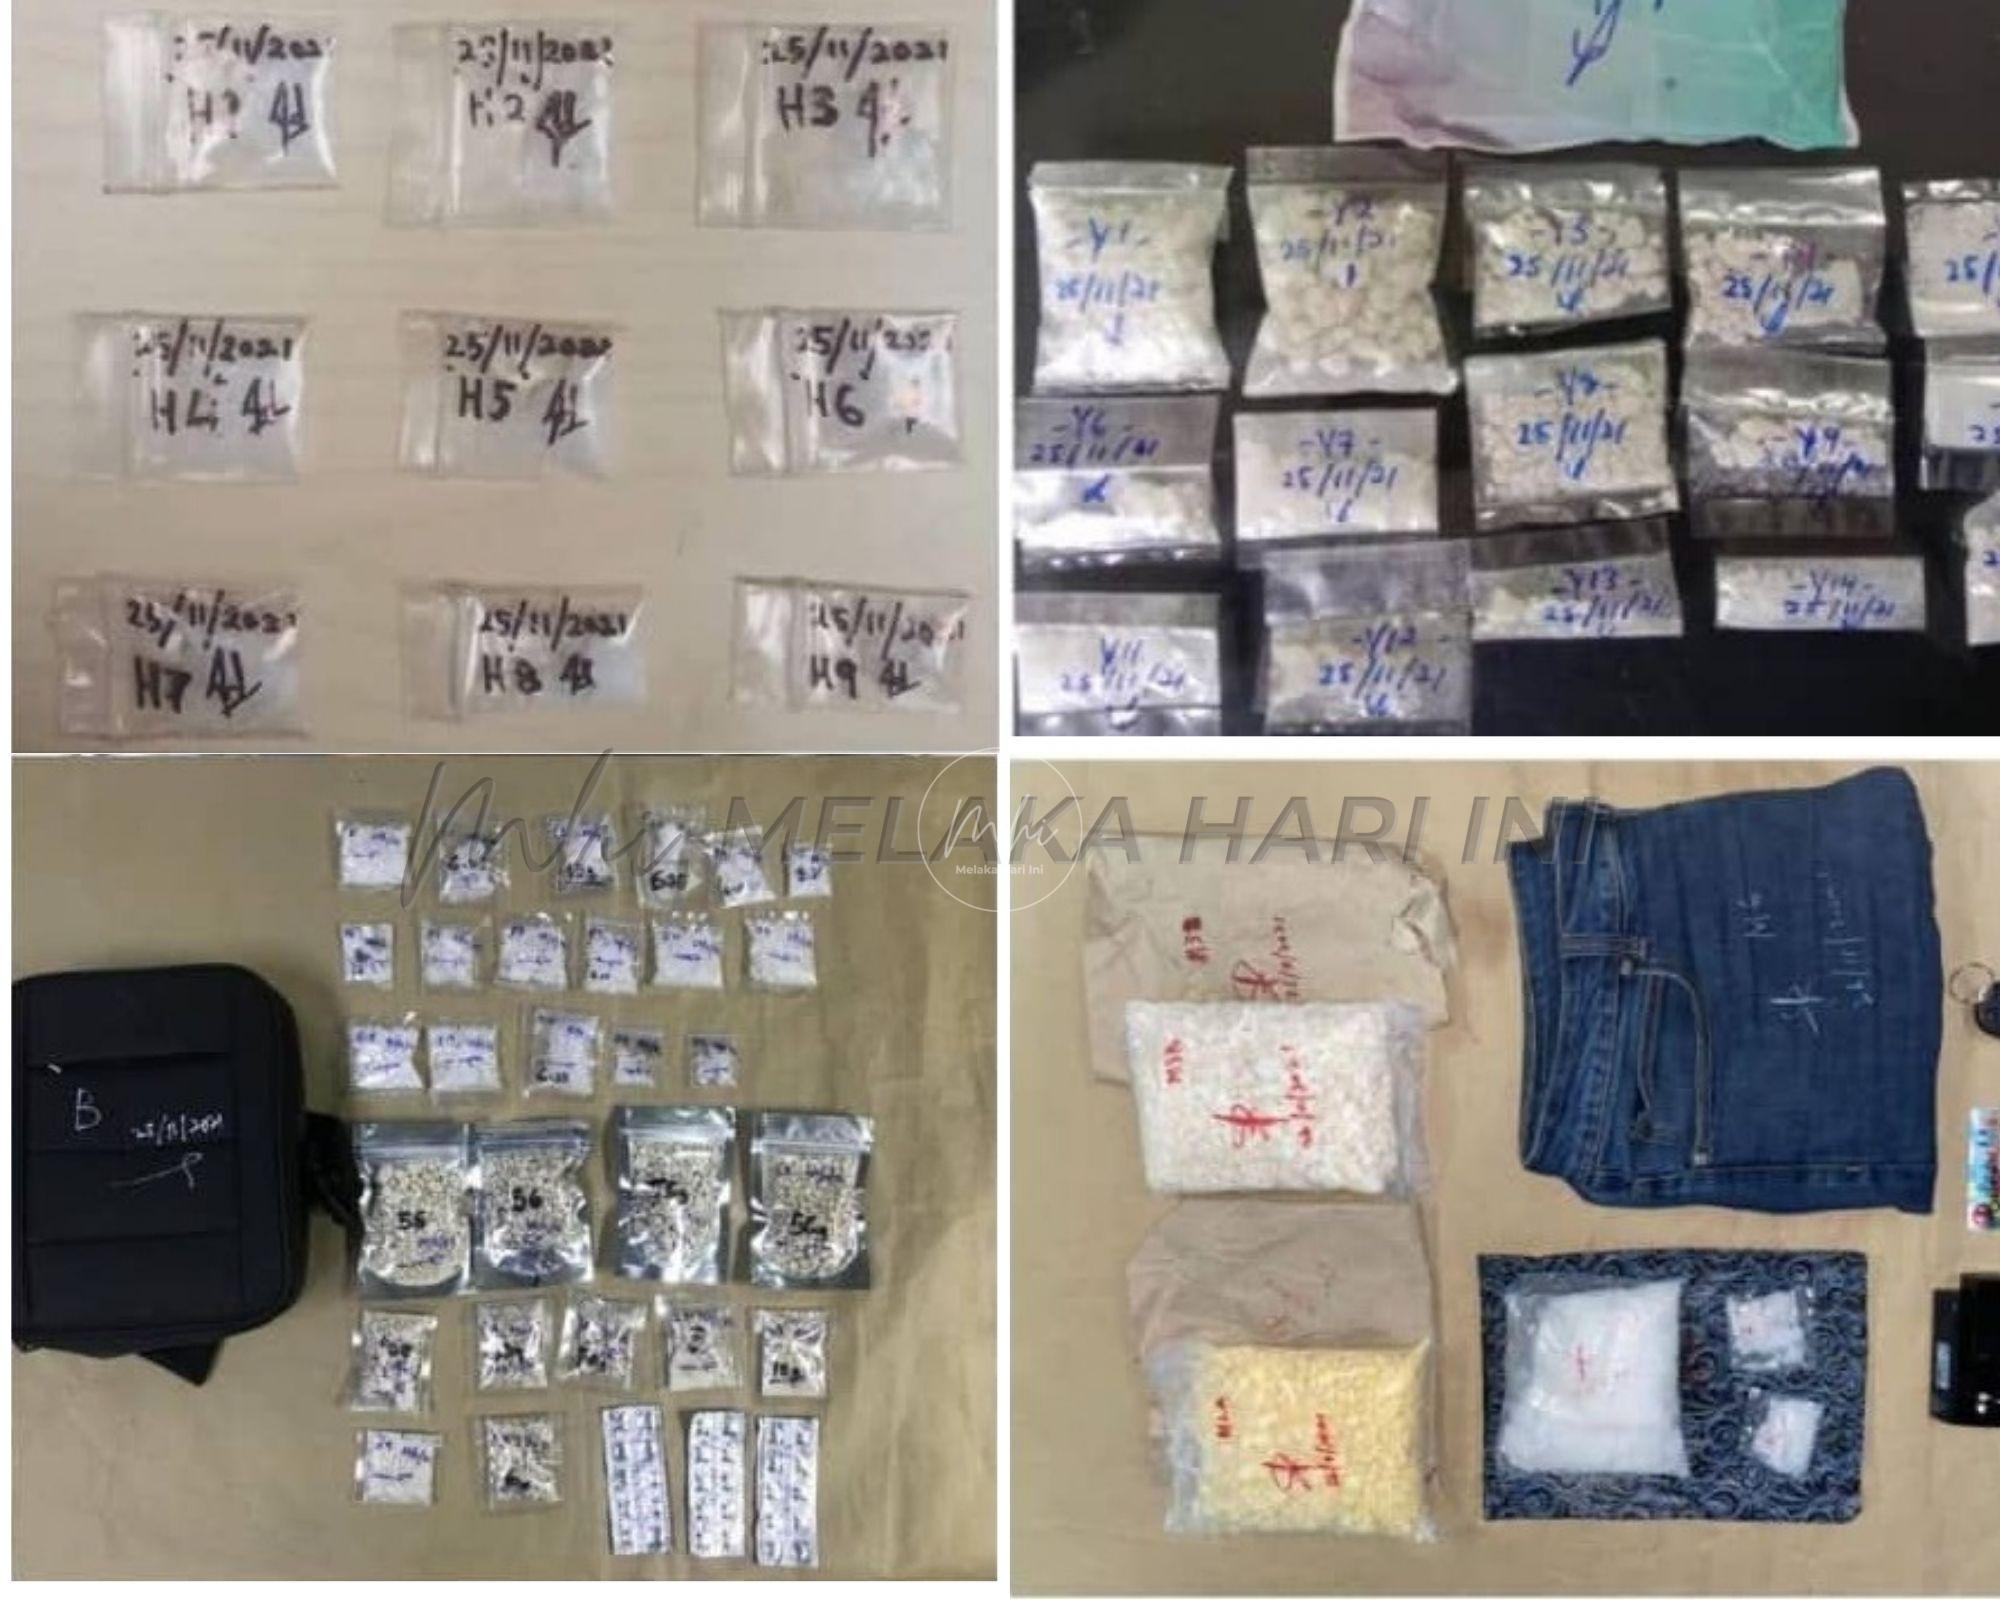 Polis rampas dadah bernilai RM43,000 dalam tempoh seminggu